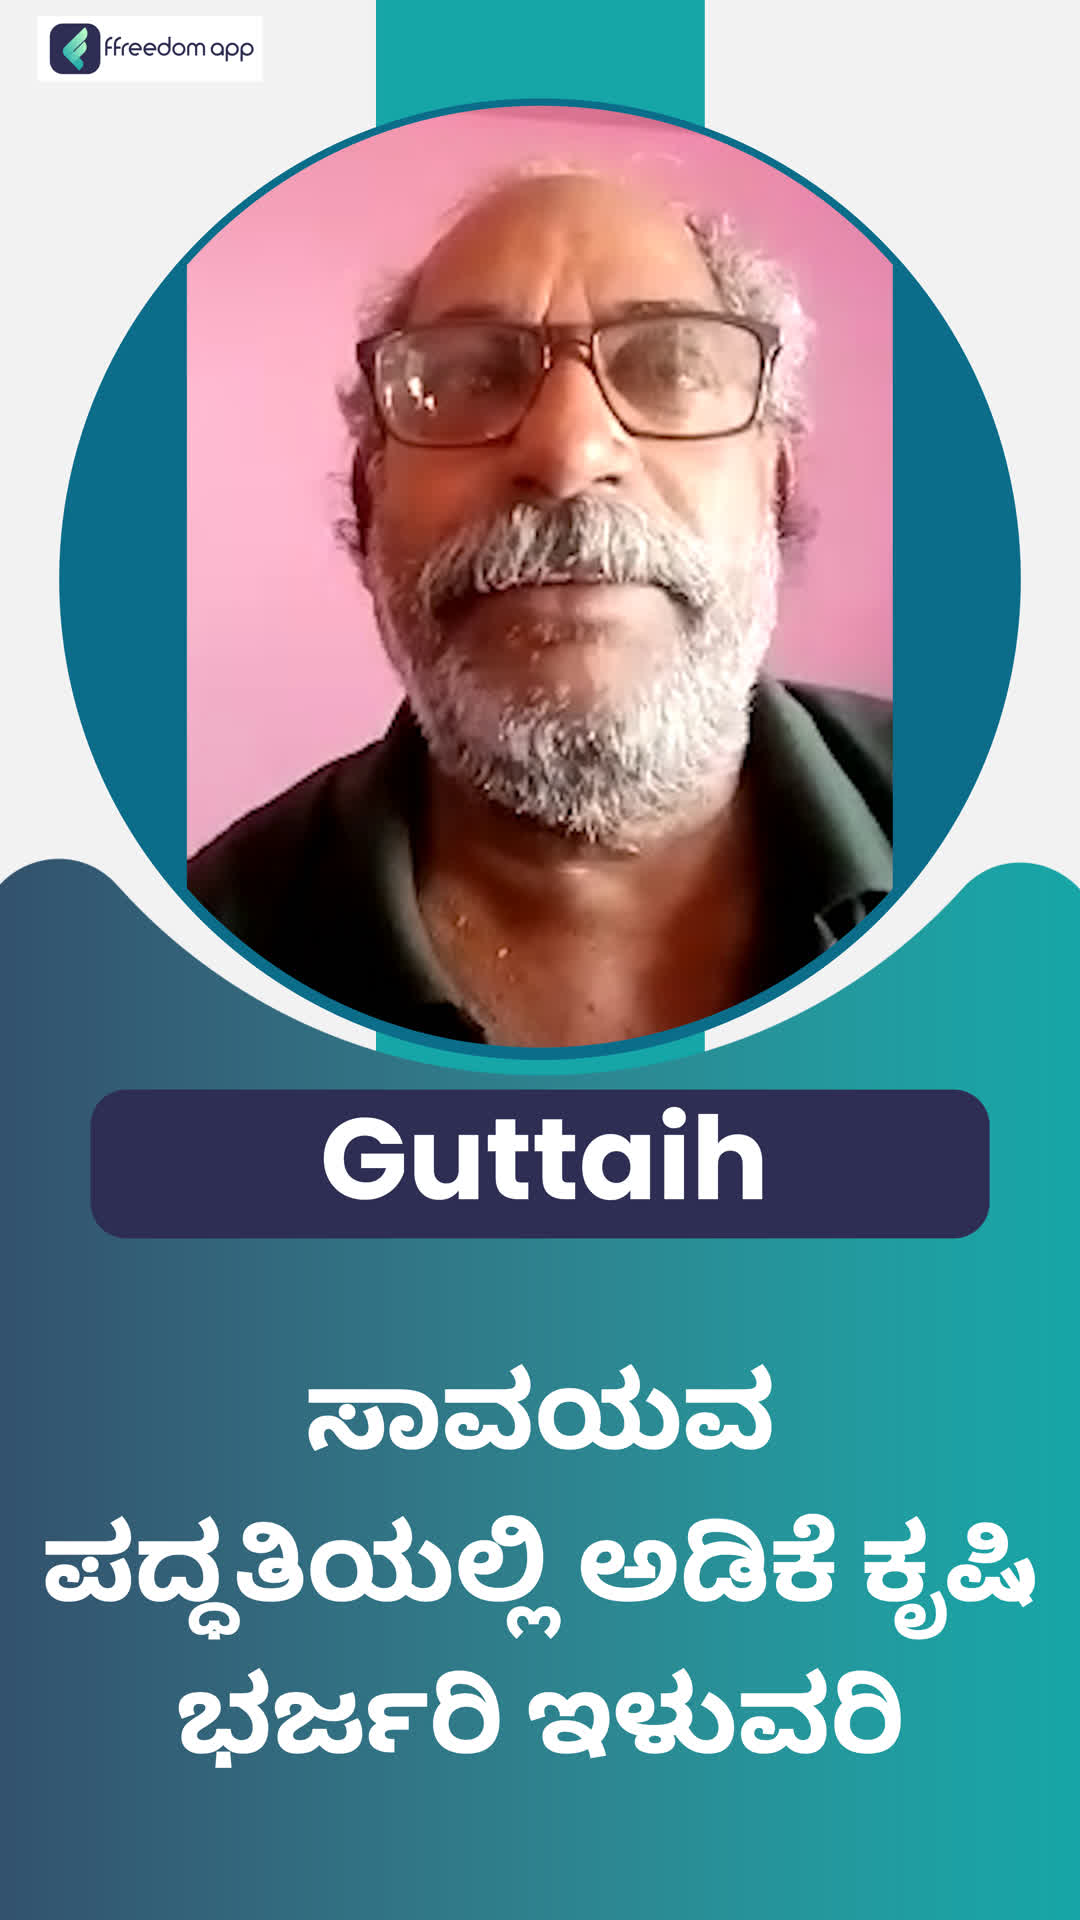 Gutta Innaiah's Honest Review of ffreedom app - Chitradurga ,Karnataka